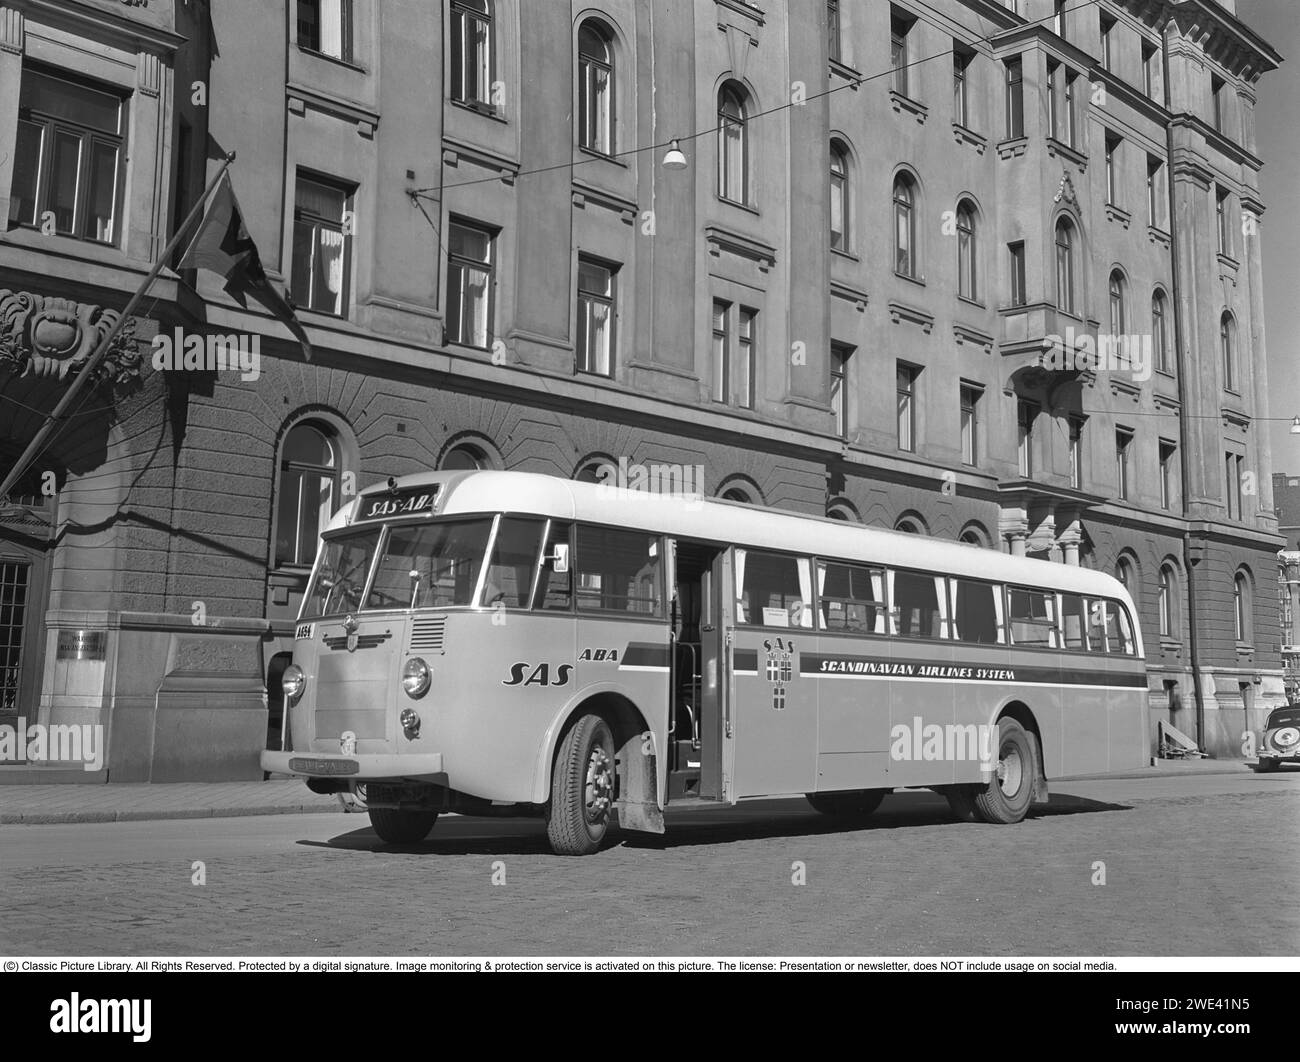 La compagnia Hägglund e i figli a Örnsköldsvik. A quel tempo, la società si chiamava fabbrica di carpenteria, con la produzione di autobus, tram, ecc. La foto è stata scattata a Nybrokajen a Stoccolma con alcune delle barche della compagnia Waxholm visibili sulla destra. Il suggestivo edificio del teatro può essere visto sulla sinistra. Un autobus Scania Vabi dove Hägglund e Sons costruirono la carrozzeria e gli interni nel 1949. L'autobus con numero di registrazione A654 è contrassegnato con l'emblema e il logo della compagnia aerea SAS. Kristoffersson rif. 238A-27 Foto Stock